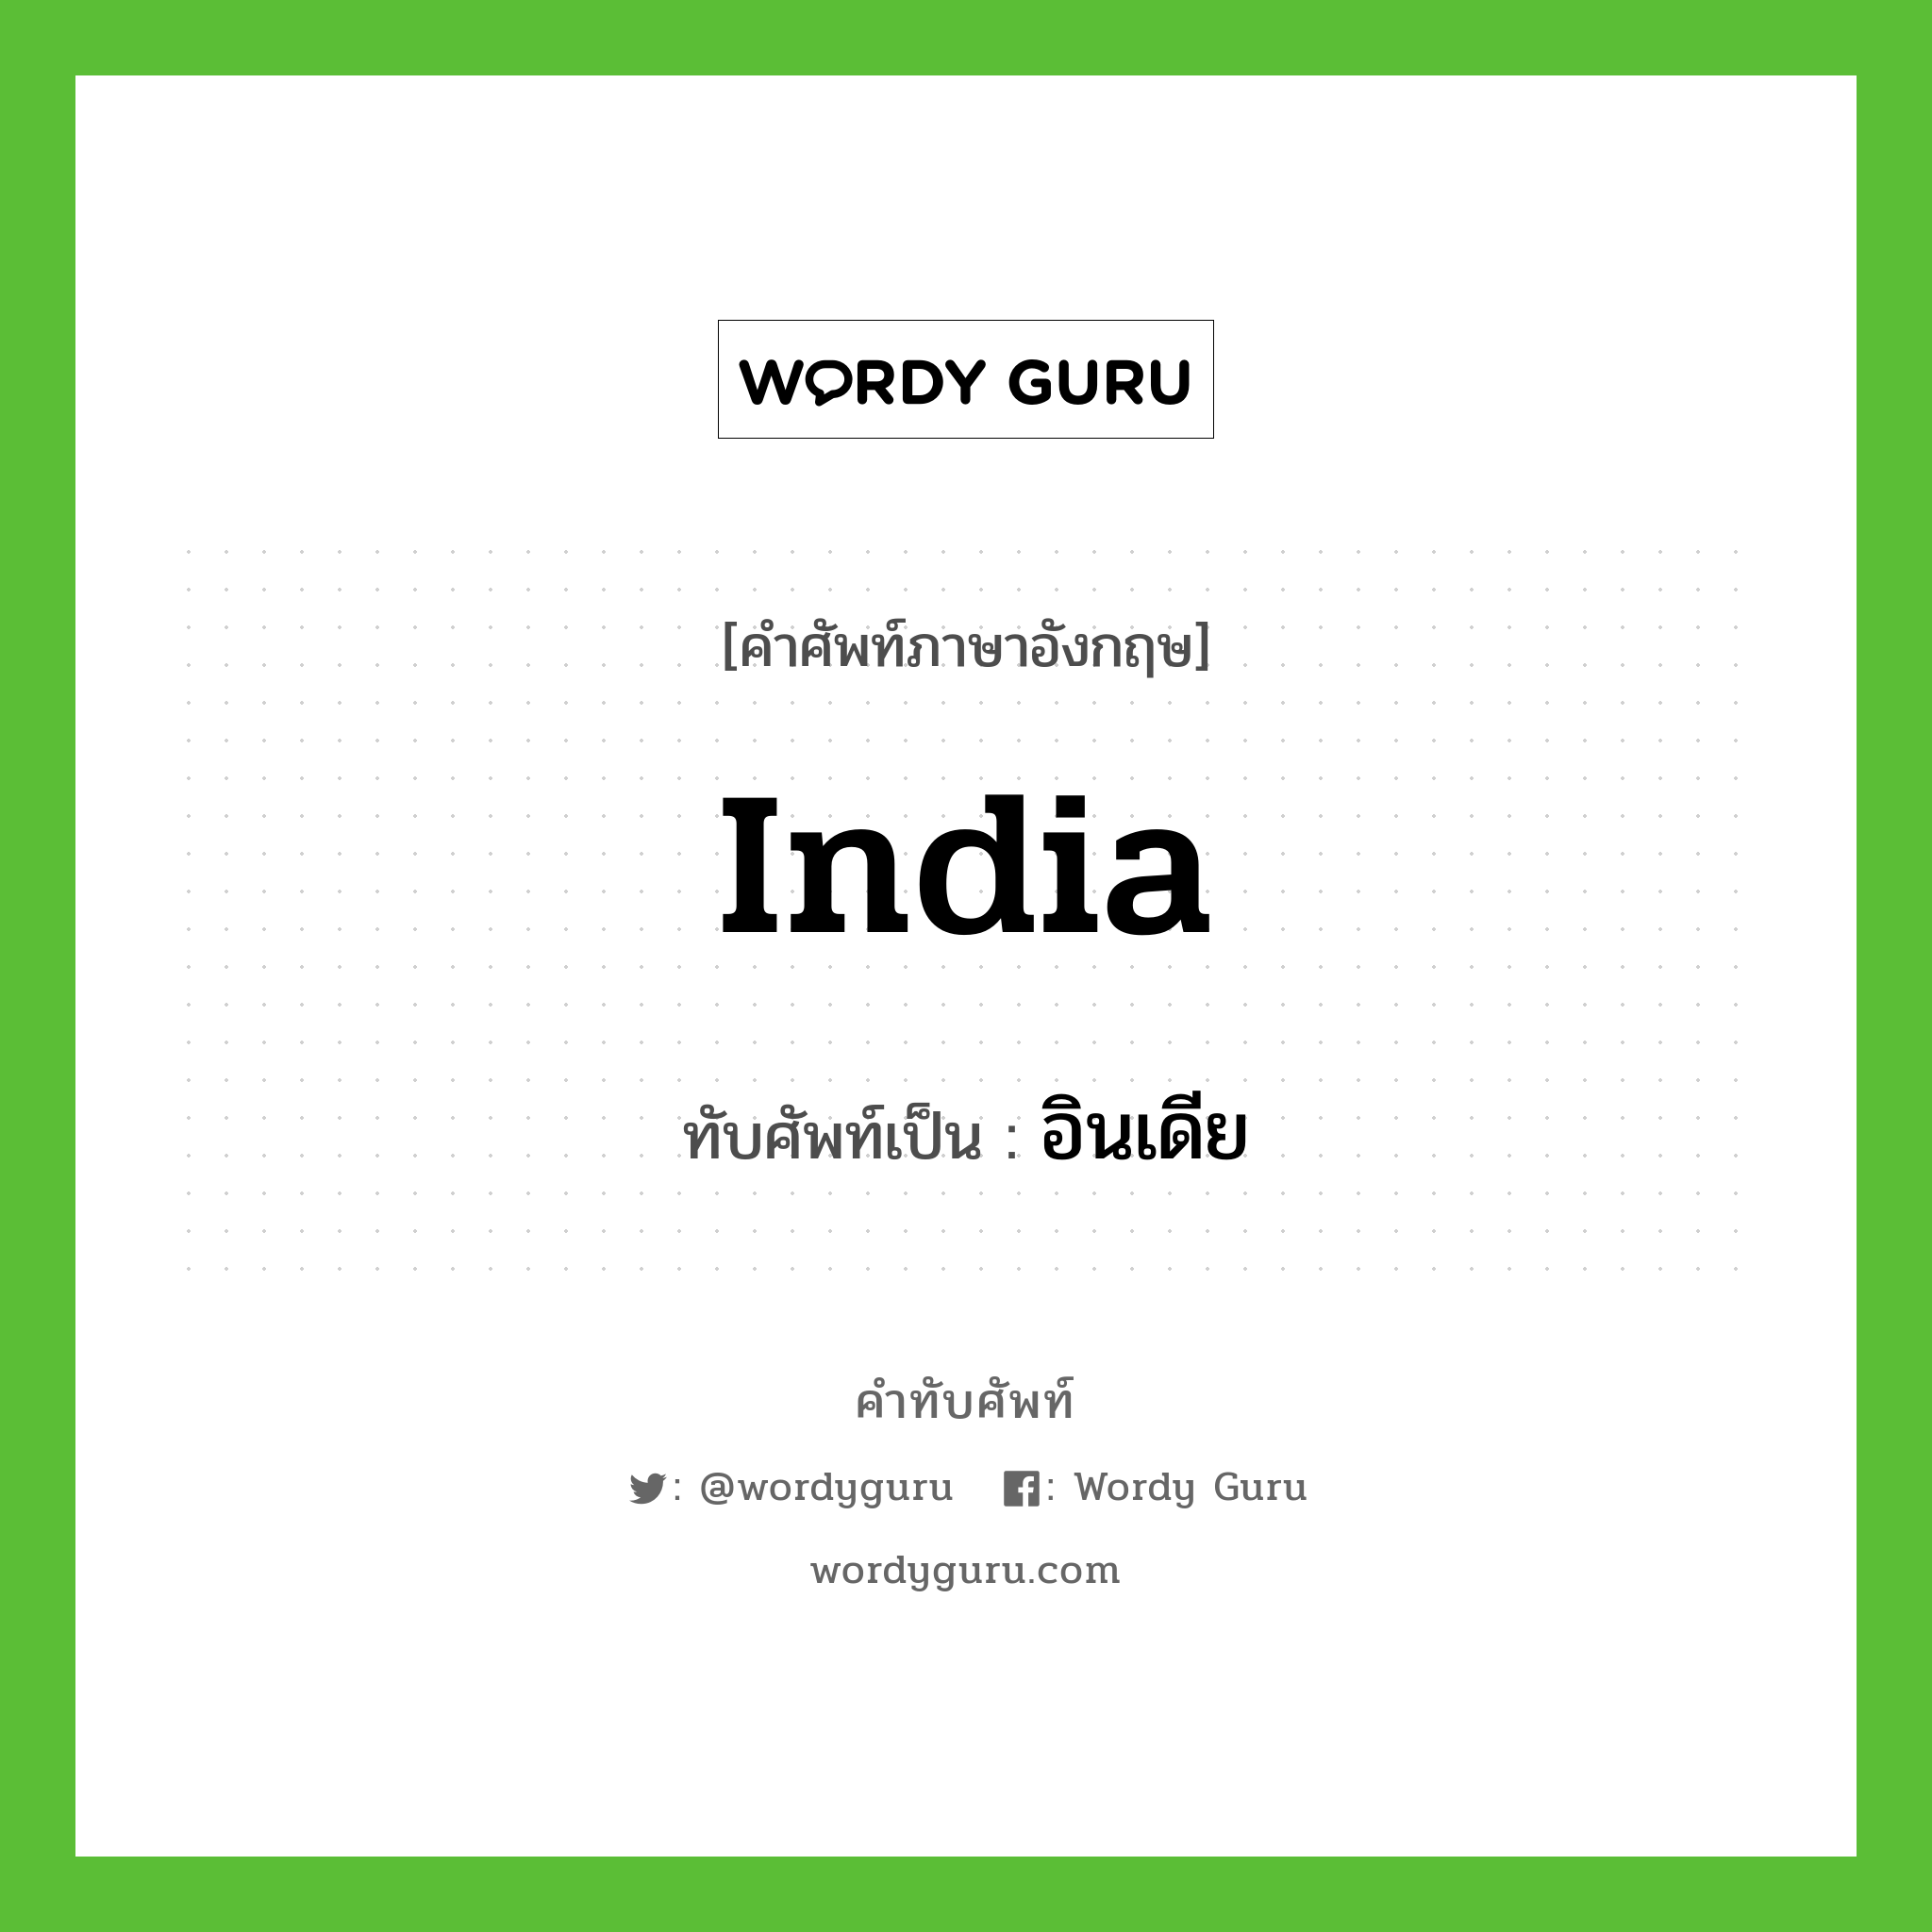 India เขียนเป็นคำไทยว่าอะไร?, คำศัพท์ภาษาอังกฤษ India ทับศัพท์เป็น อินเดีย